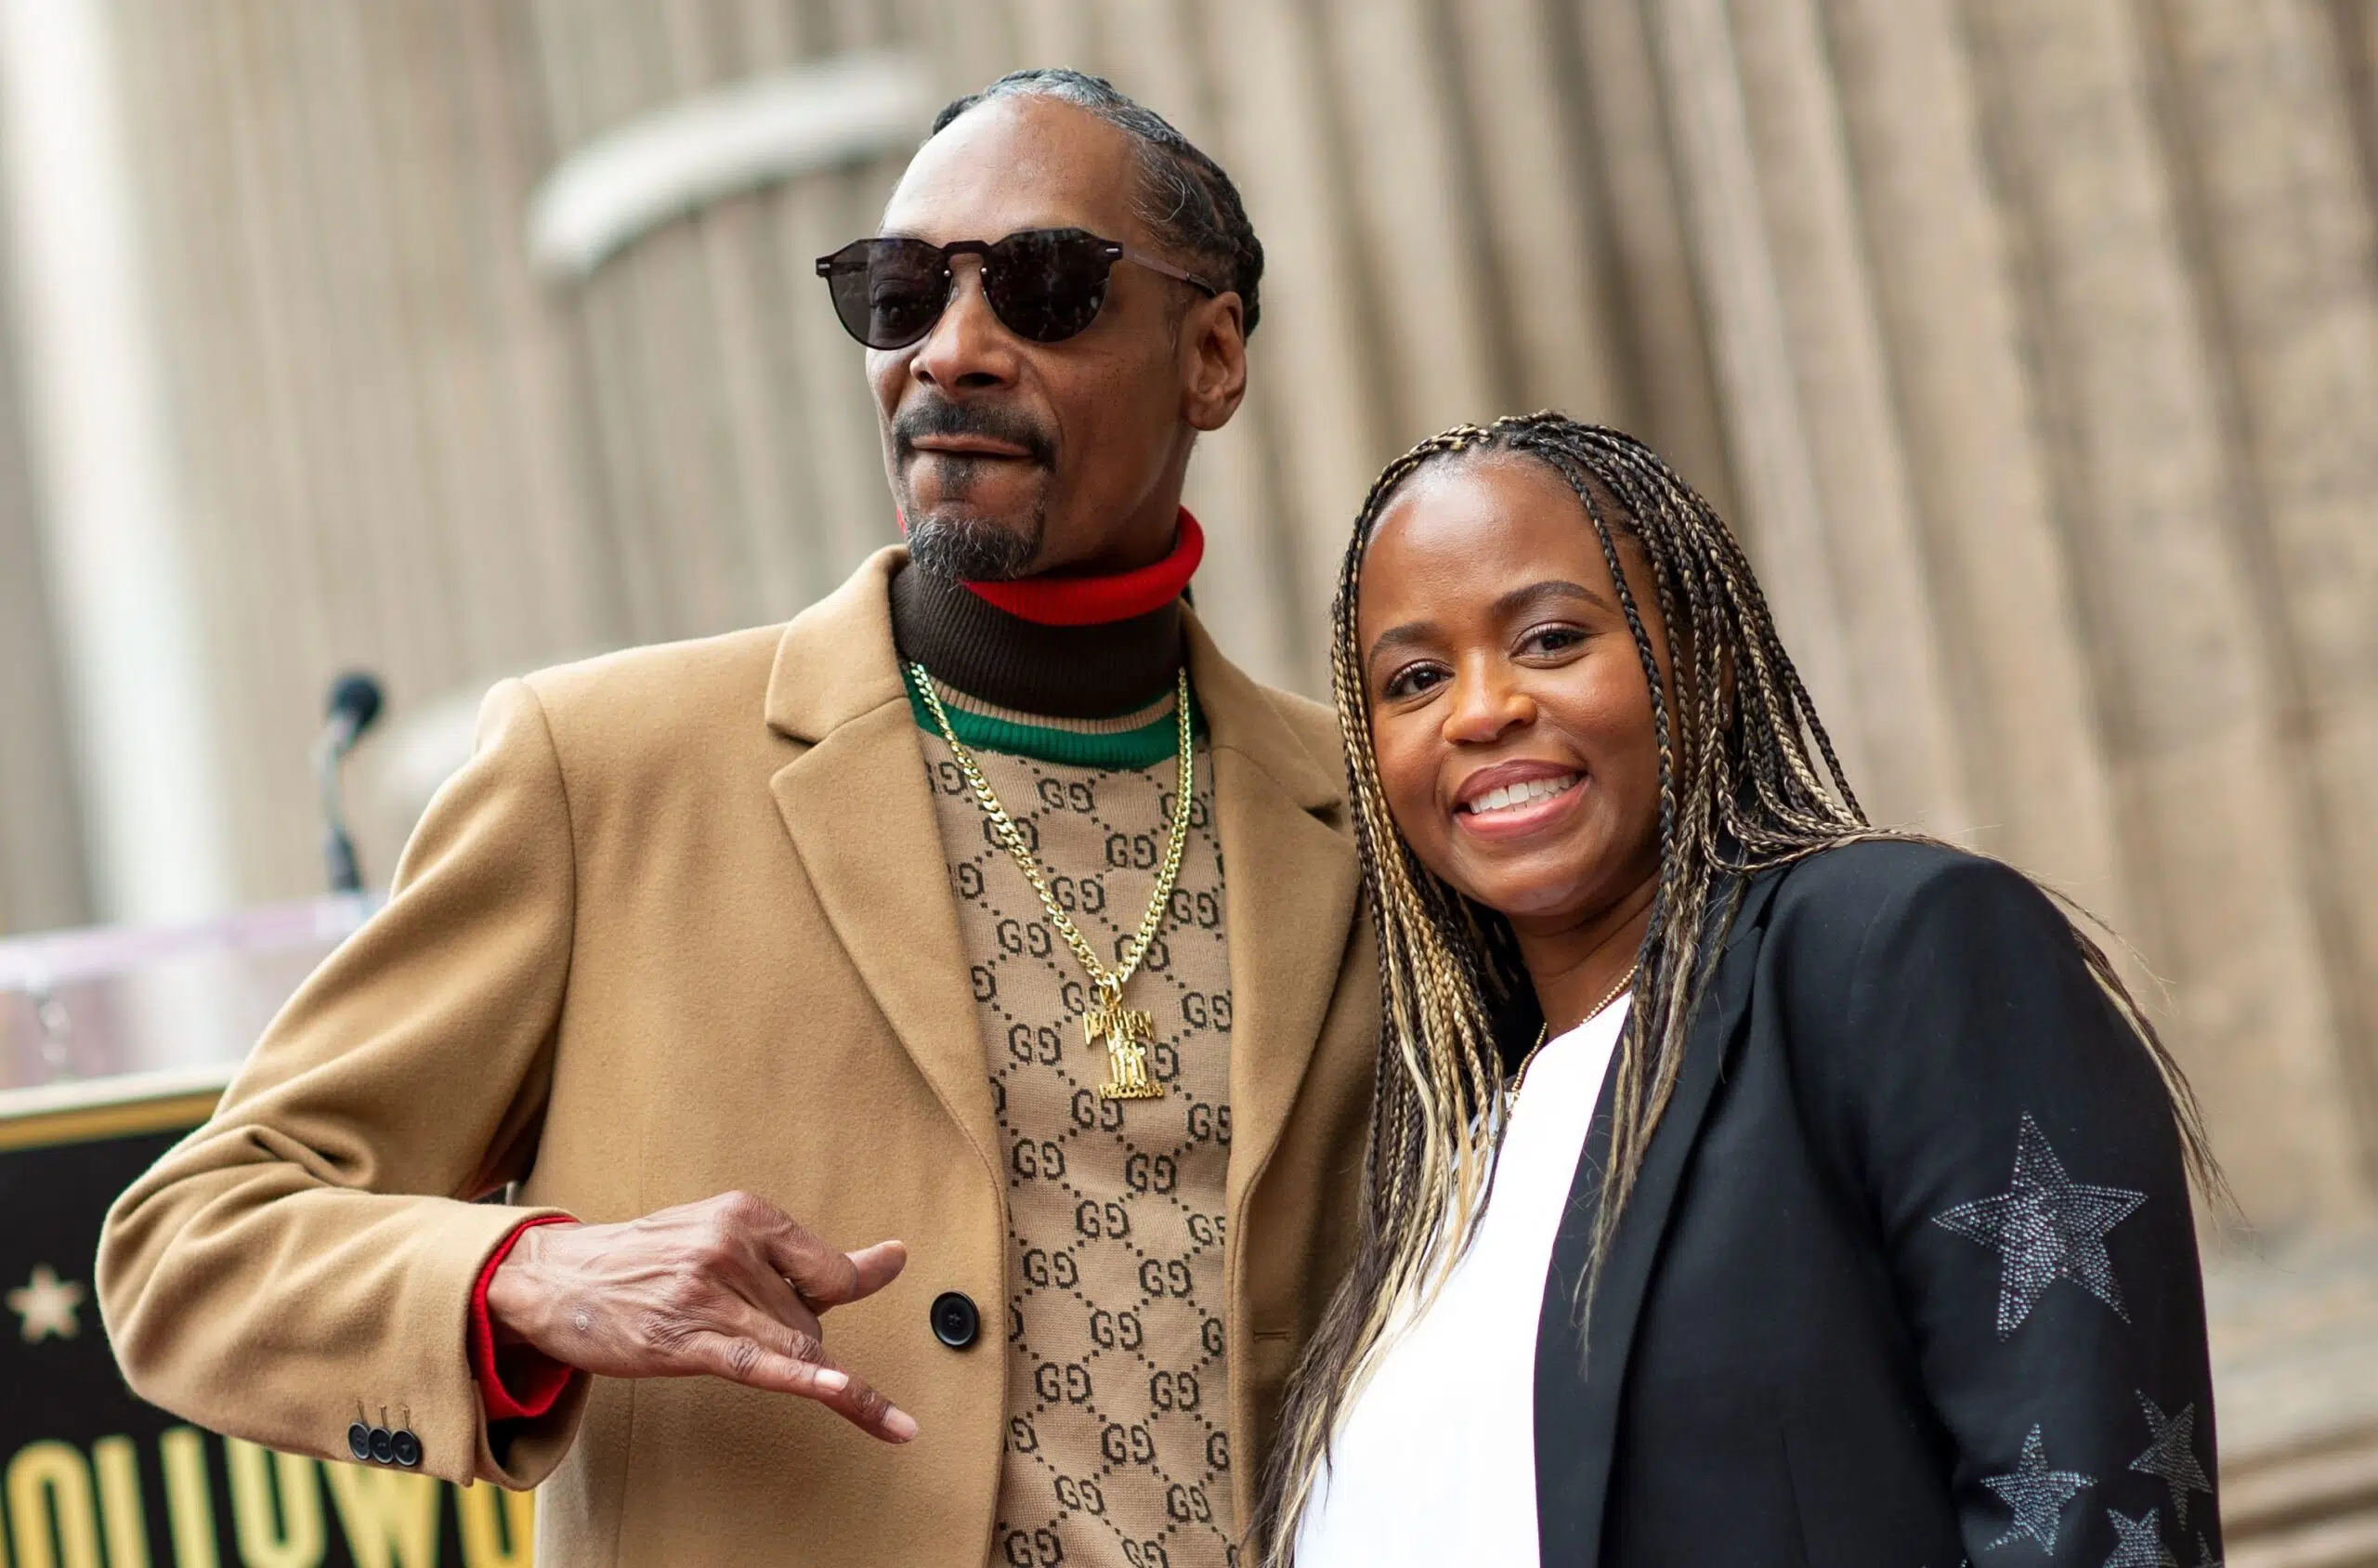 est l'âge de Snoop Dogg (est-il plus âgé que sa femme Shante Broadus)